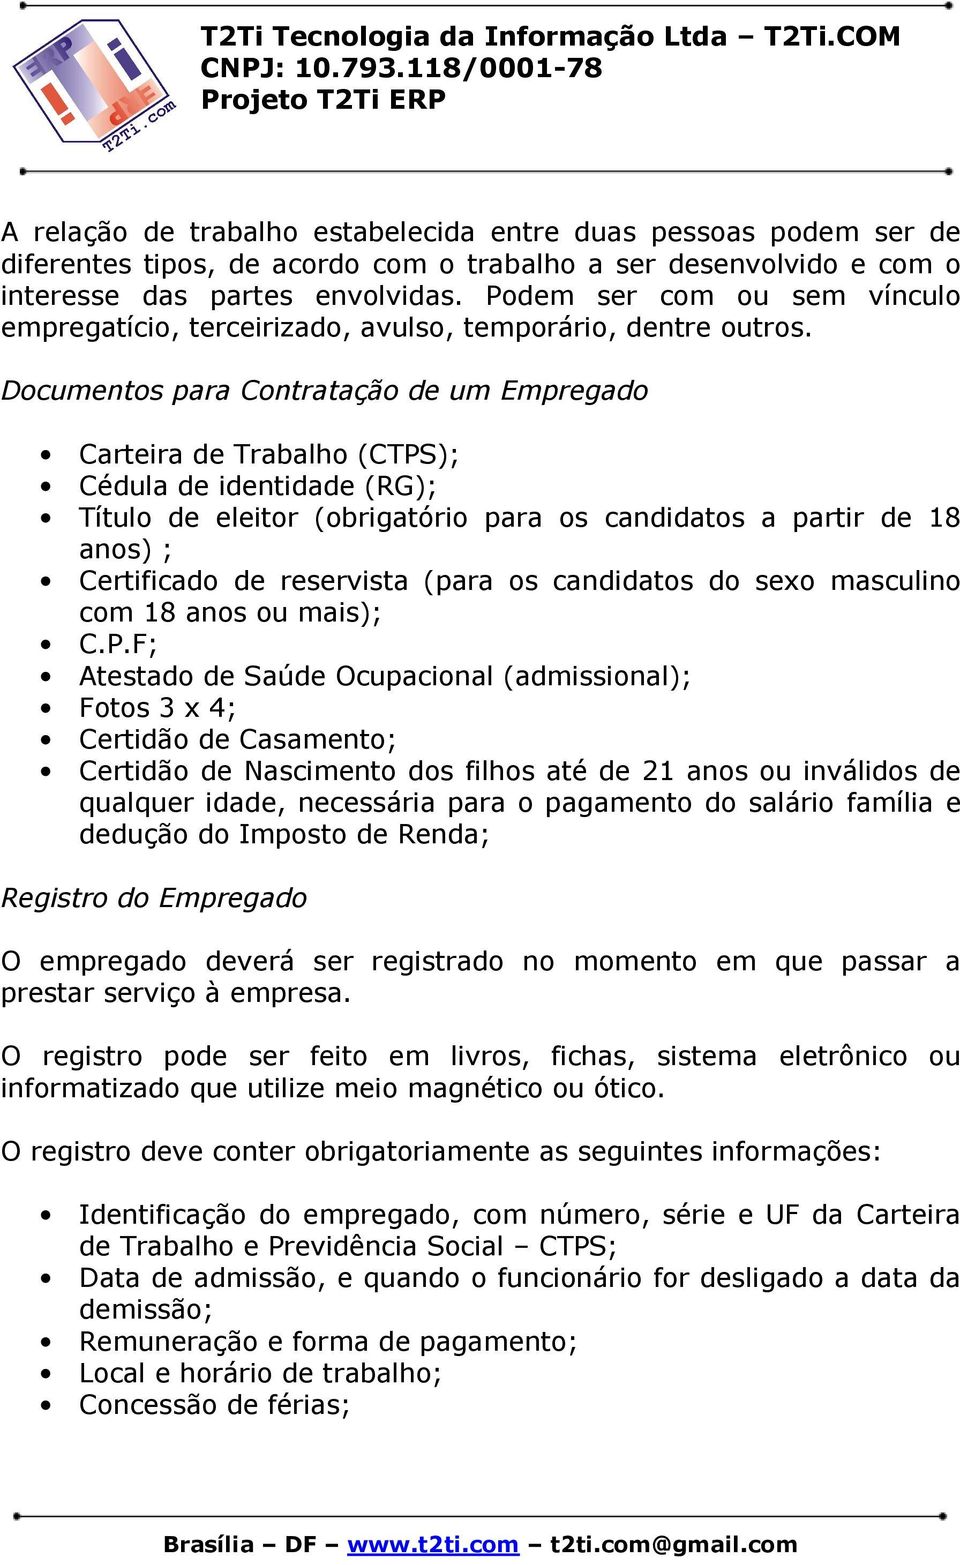 Documentos para Contratação de um Empregado Carteira de Trabalho (CTPS); Cédula de identidade (RG); Título de eleitor (obrigatório para os candidatos a partir de 18 anos) ; Certificado de reservista